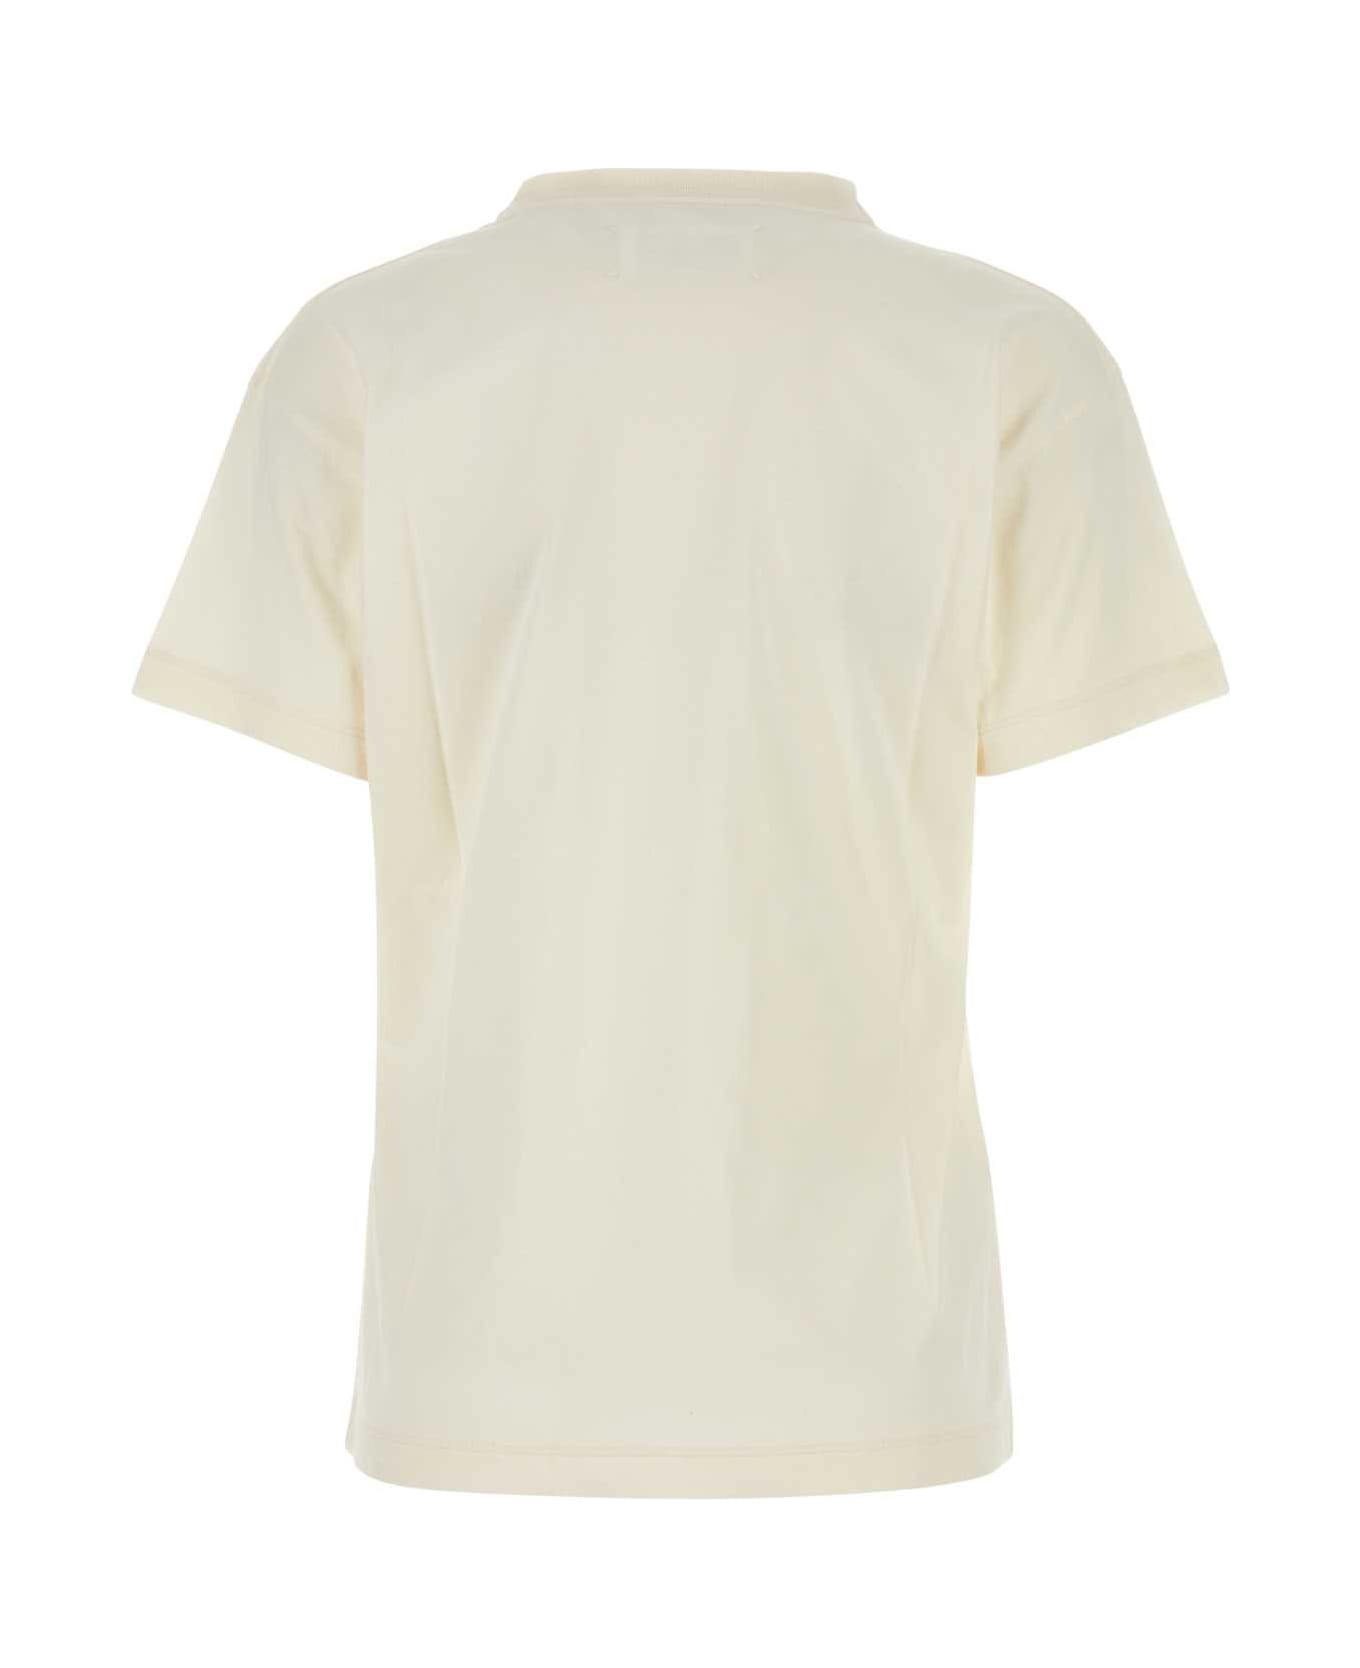 Maison Margiela Ivory Cotton T-shirt - OFFWHITE